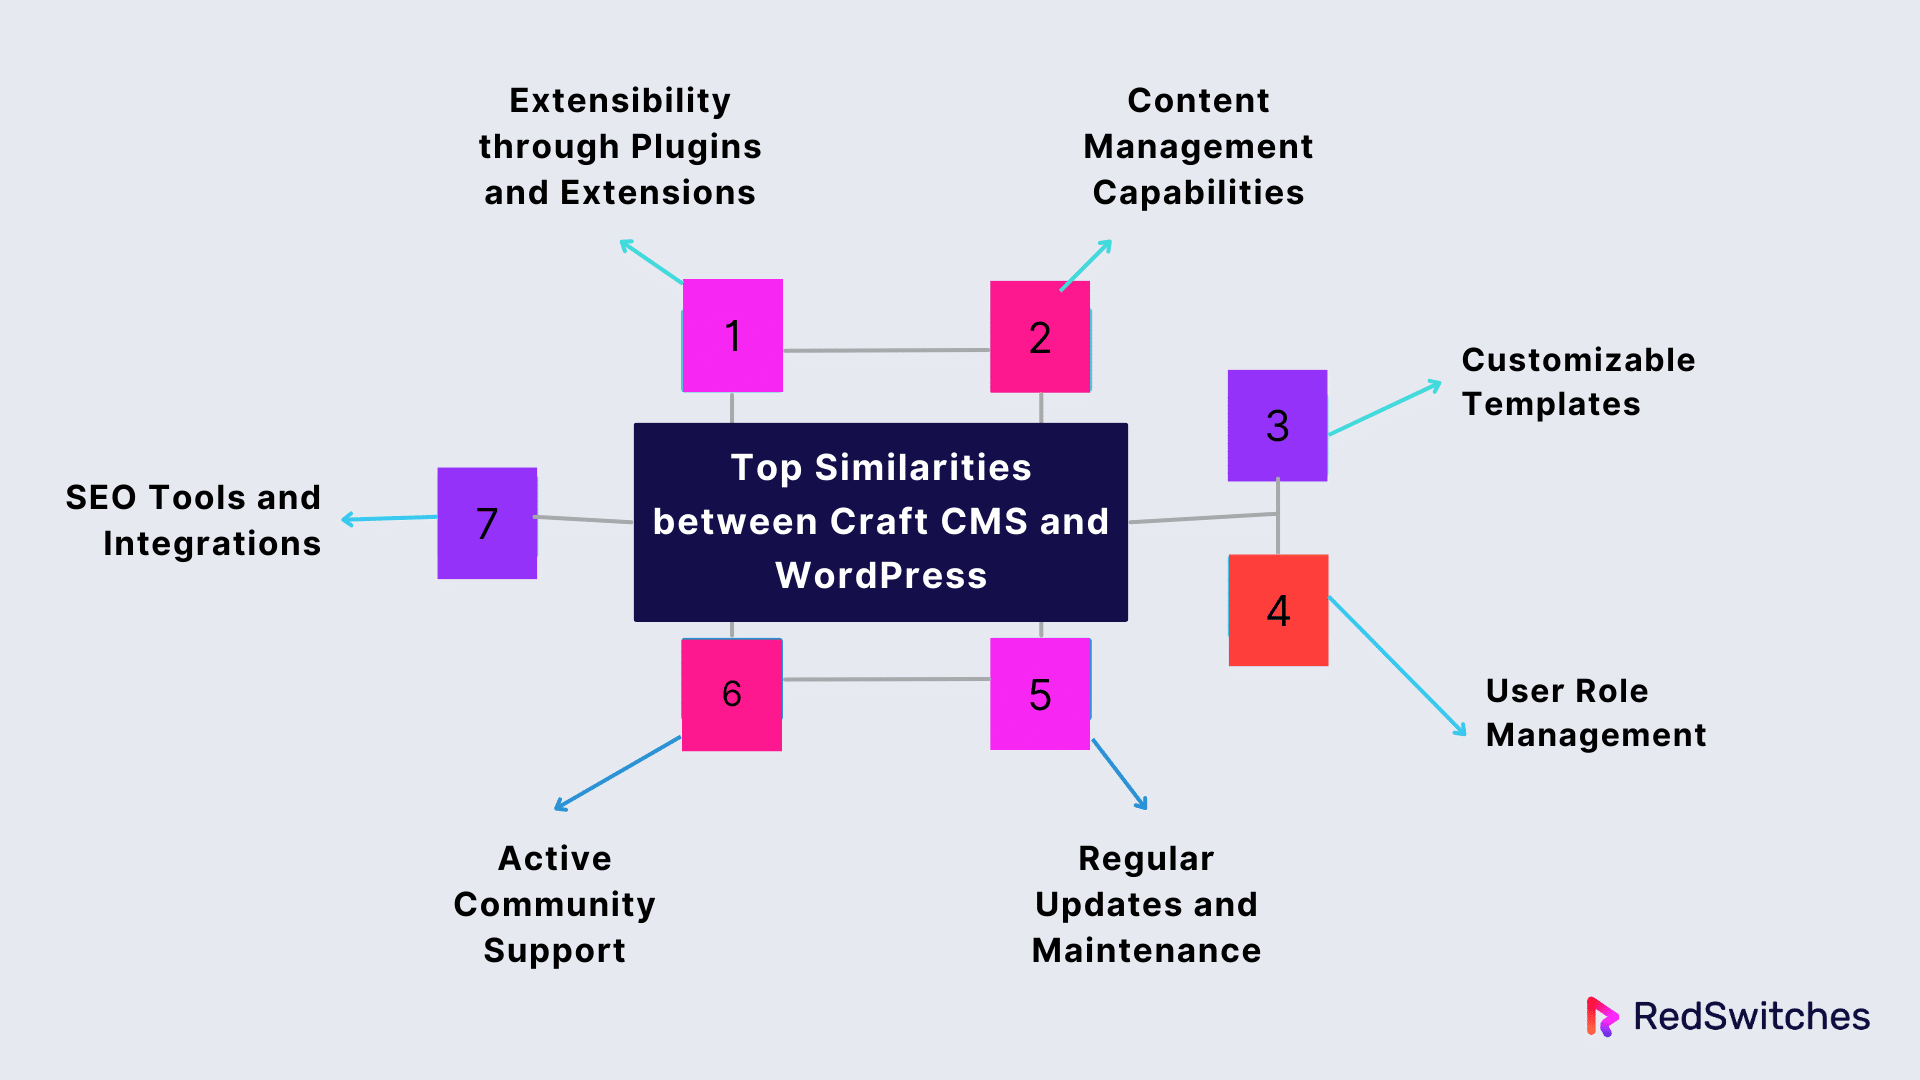 Top Similarities between Craft CMS and WordPress